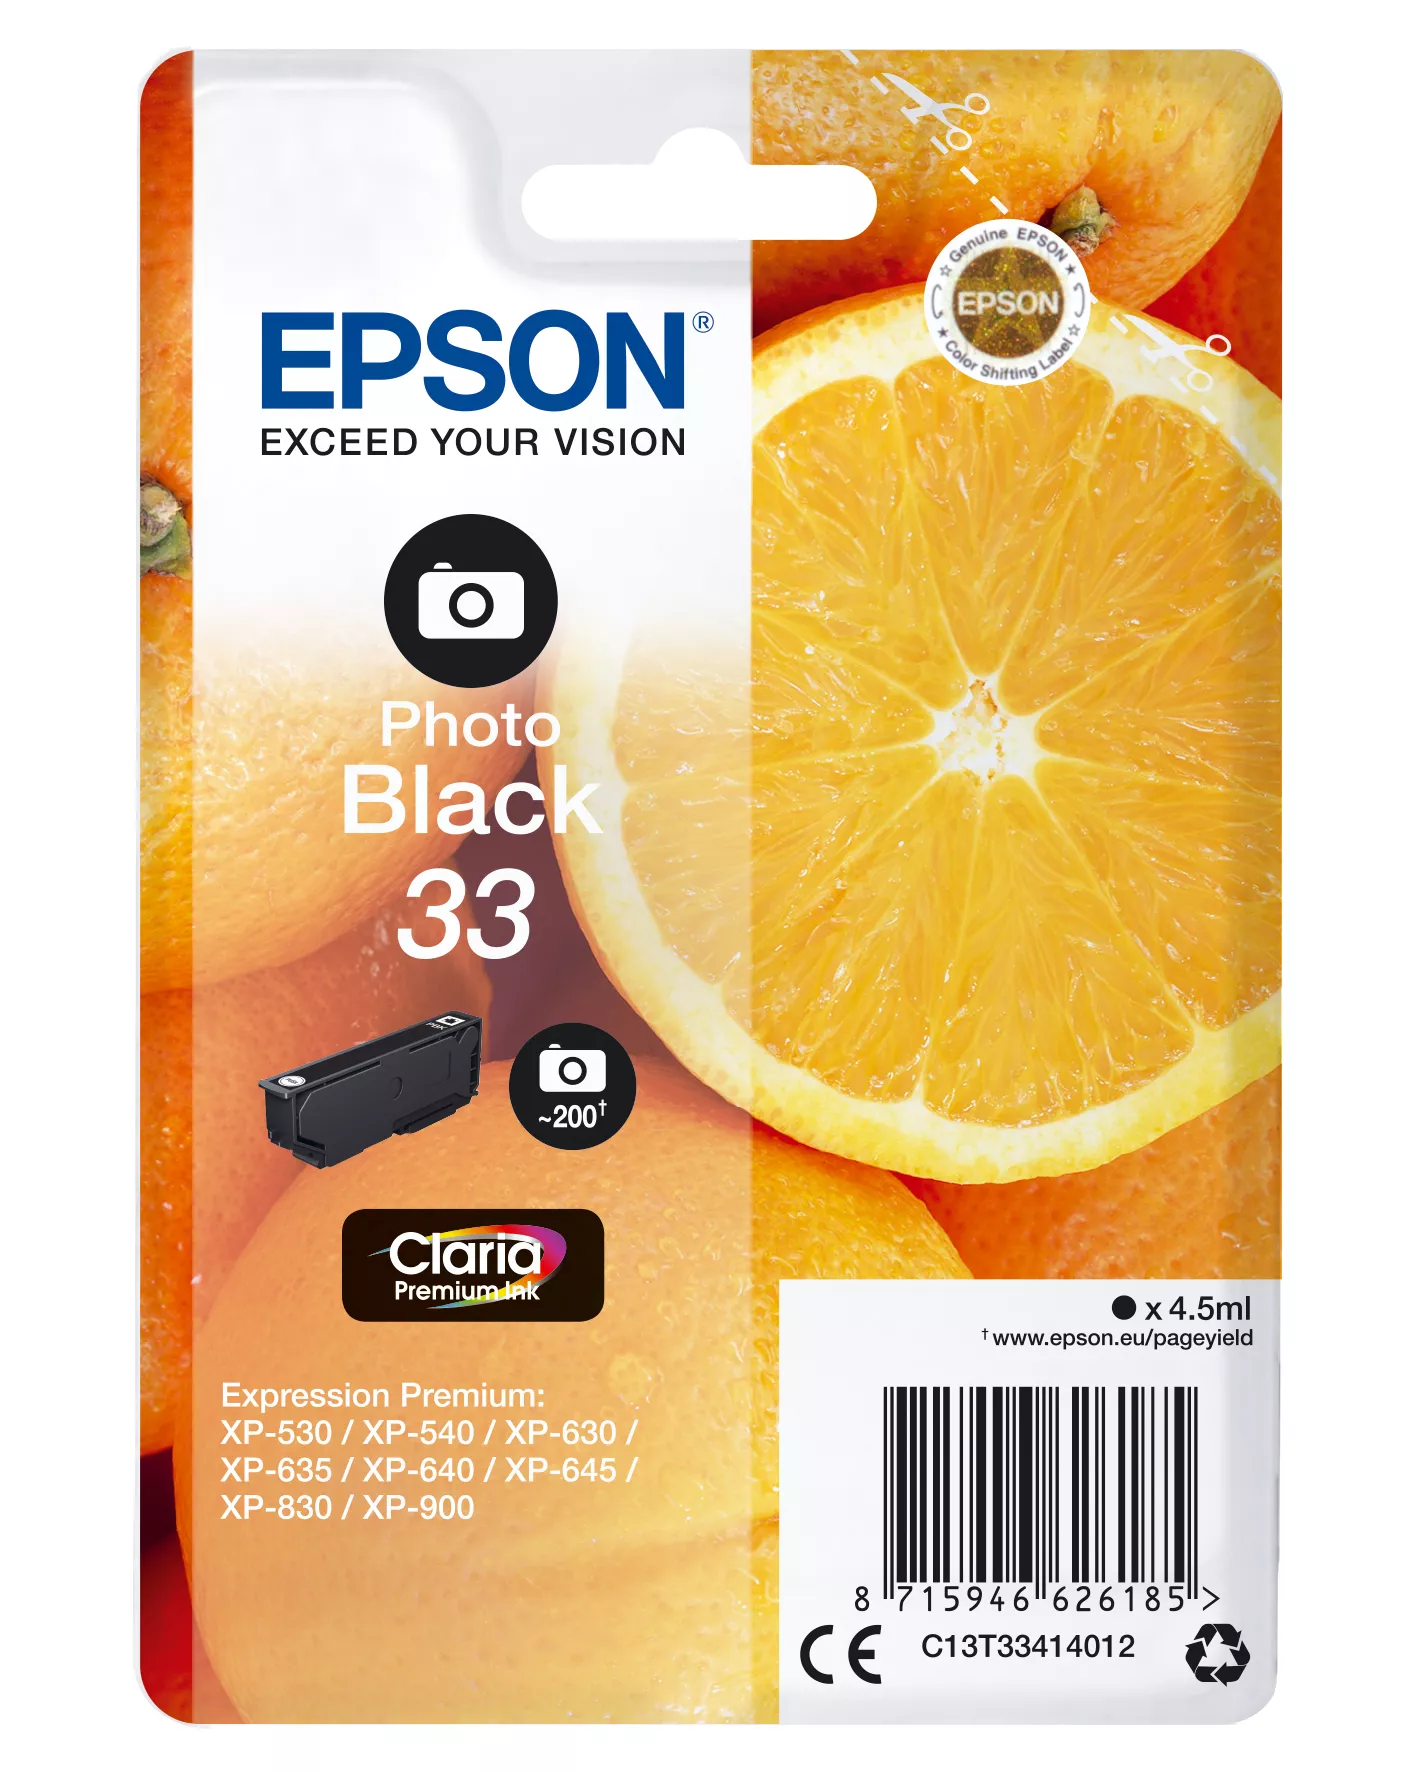 Achat EPSON Cartouche Oranges Encre Claria Premium Noir Photo sur hello RSE